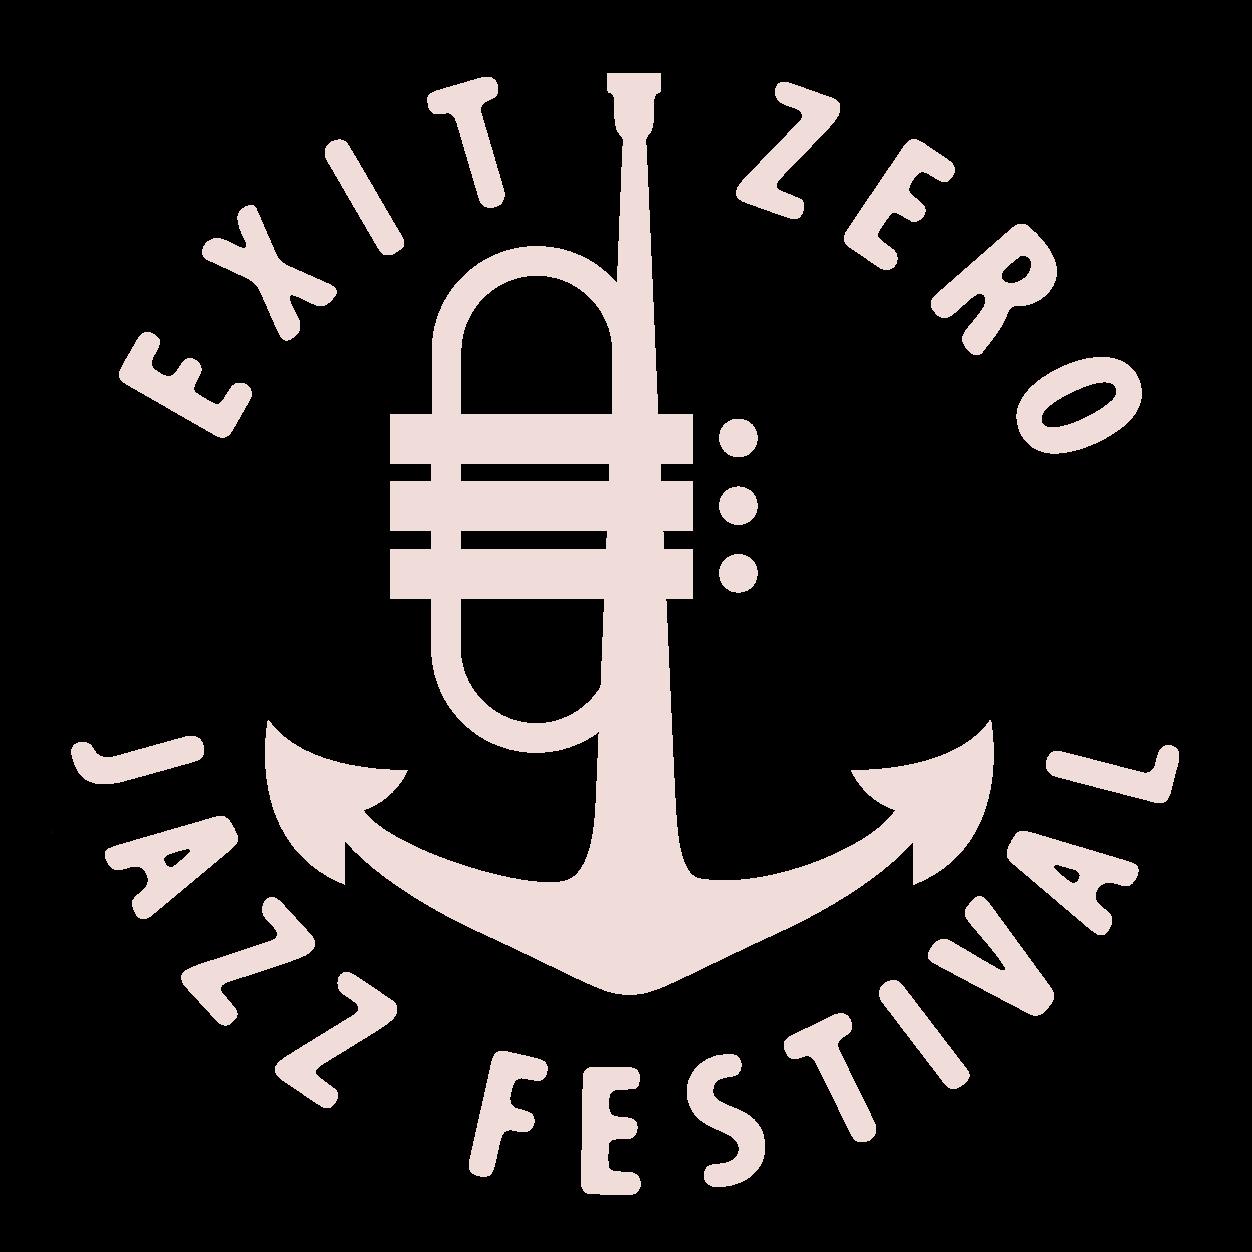 Exit Zero Jazz Festival - Spring